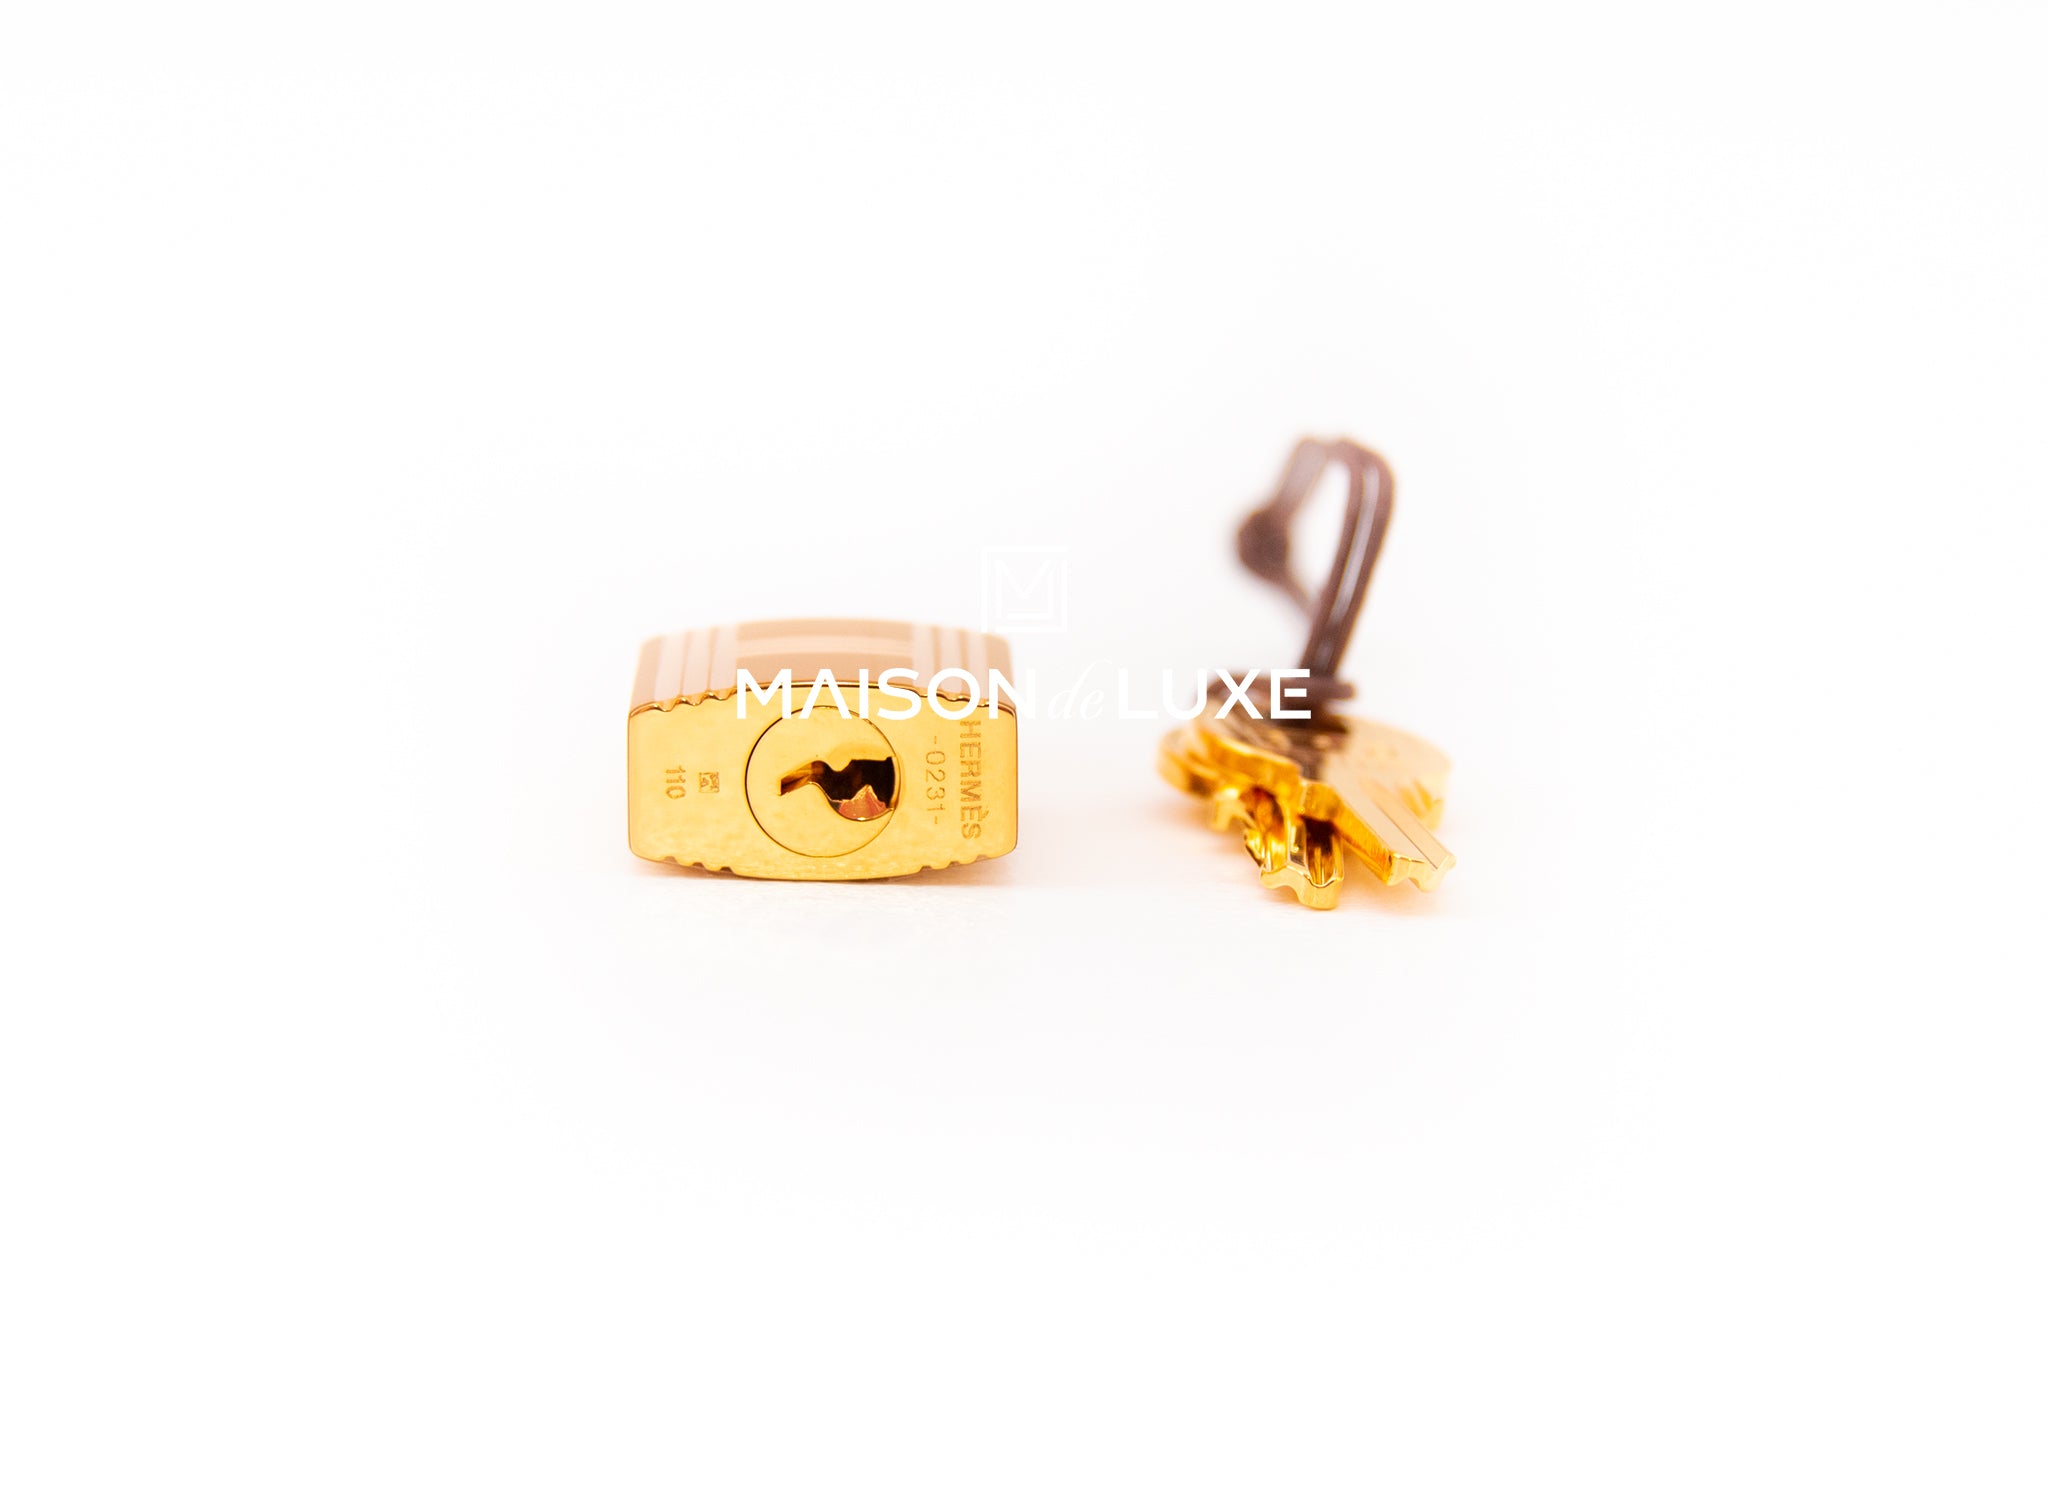 Hermès Picotin Lock 18 Trio Colour Gold/Etoupe/Nata Silver